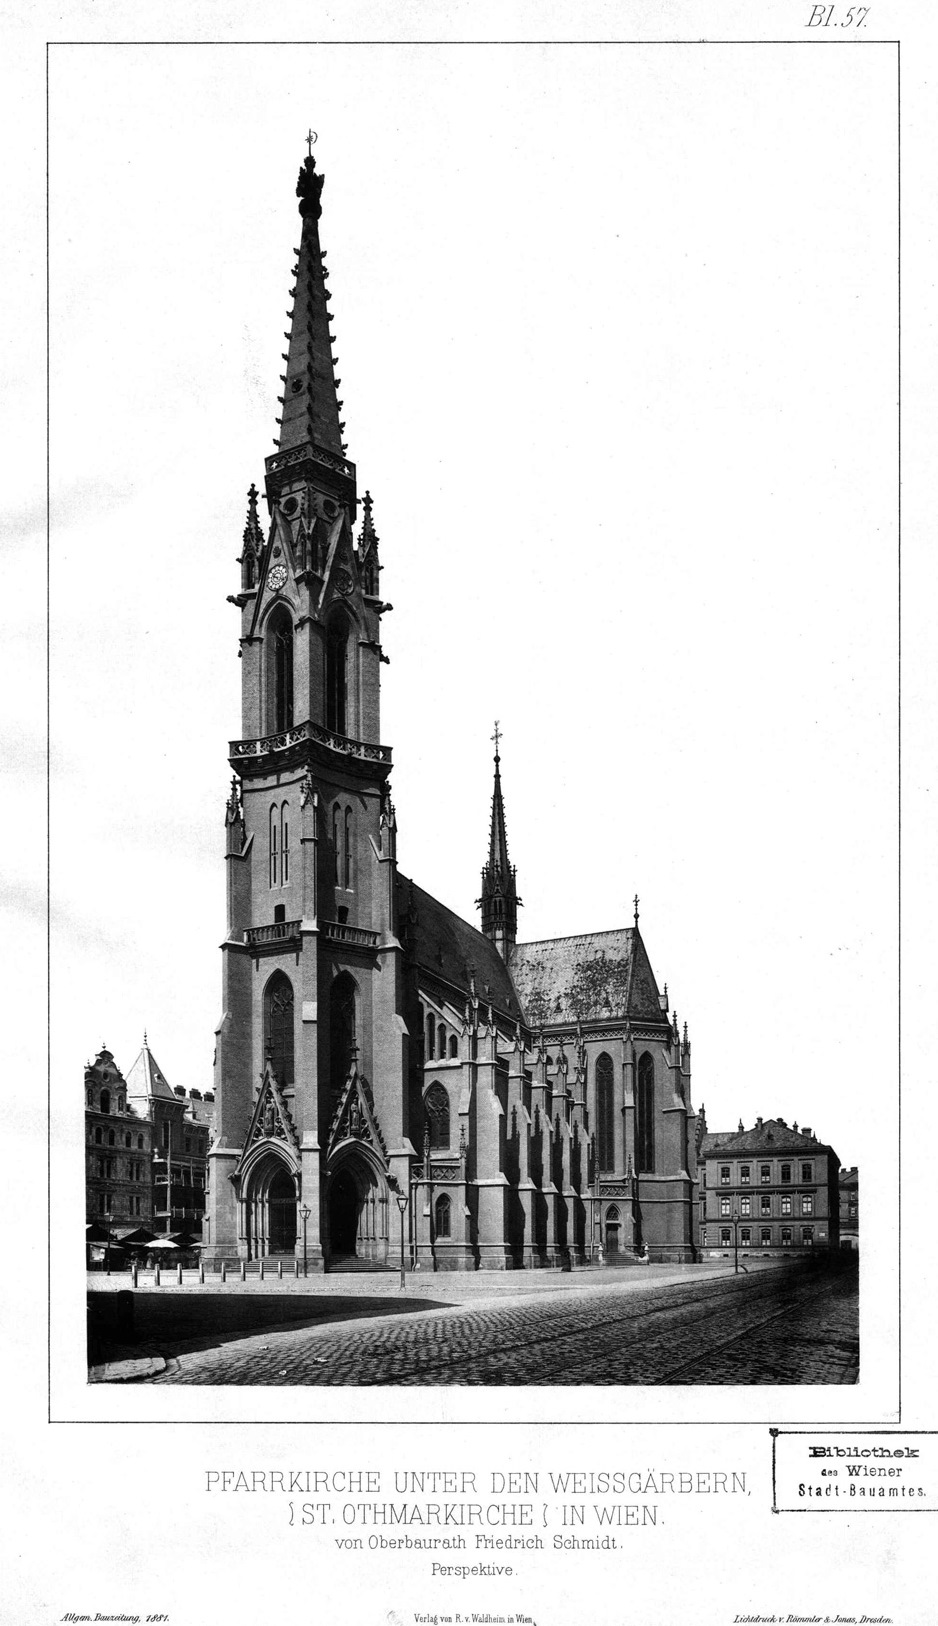 Archivbild: Pfarrkirche unter den Weissgärbern St. Othmar in Wien - von Oberbaurat Friedrich Schmidt; Perspektive